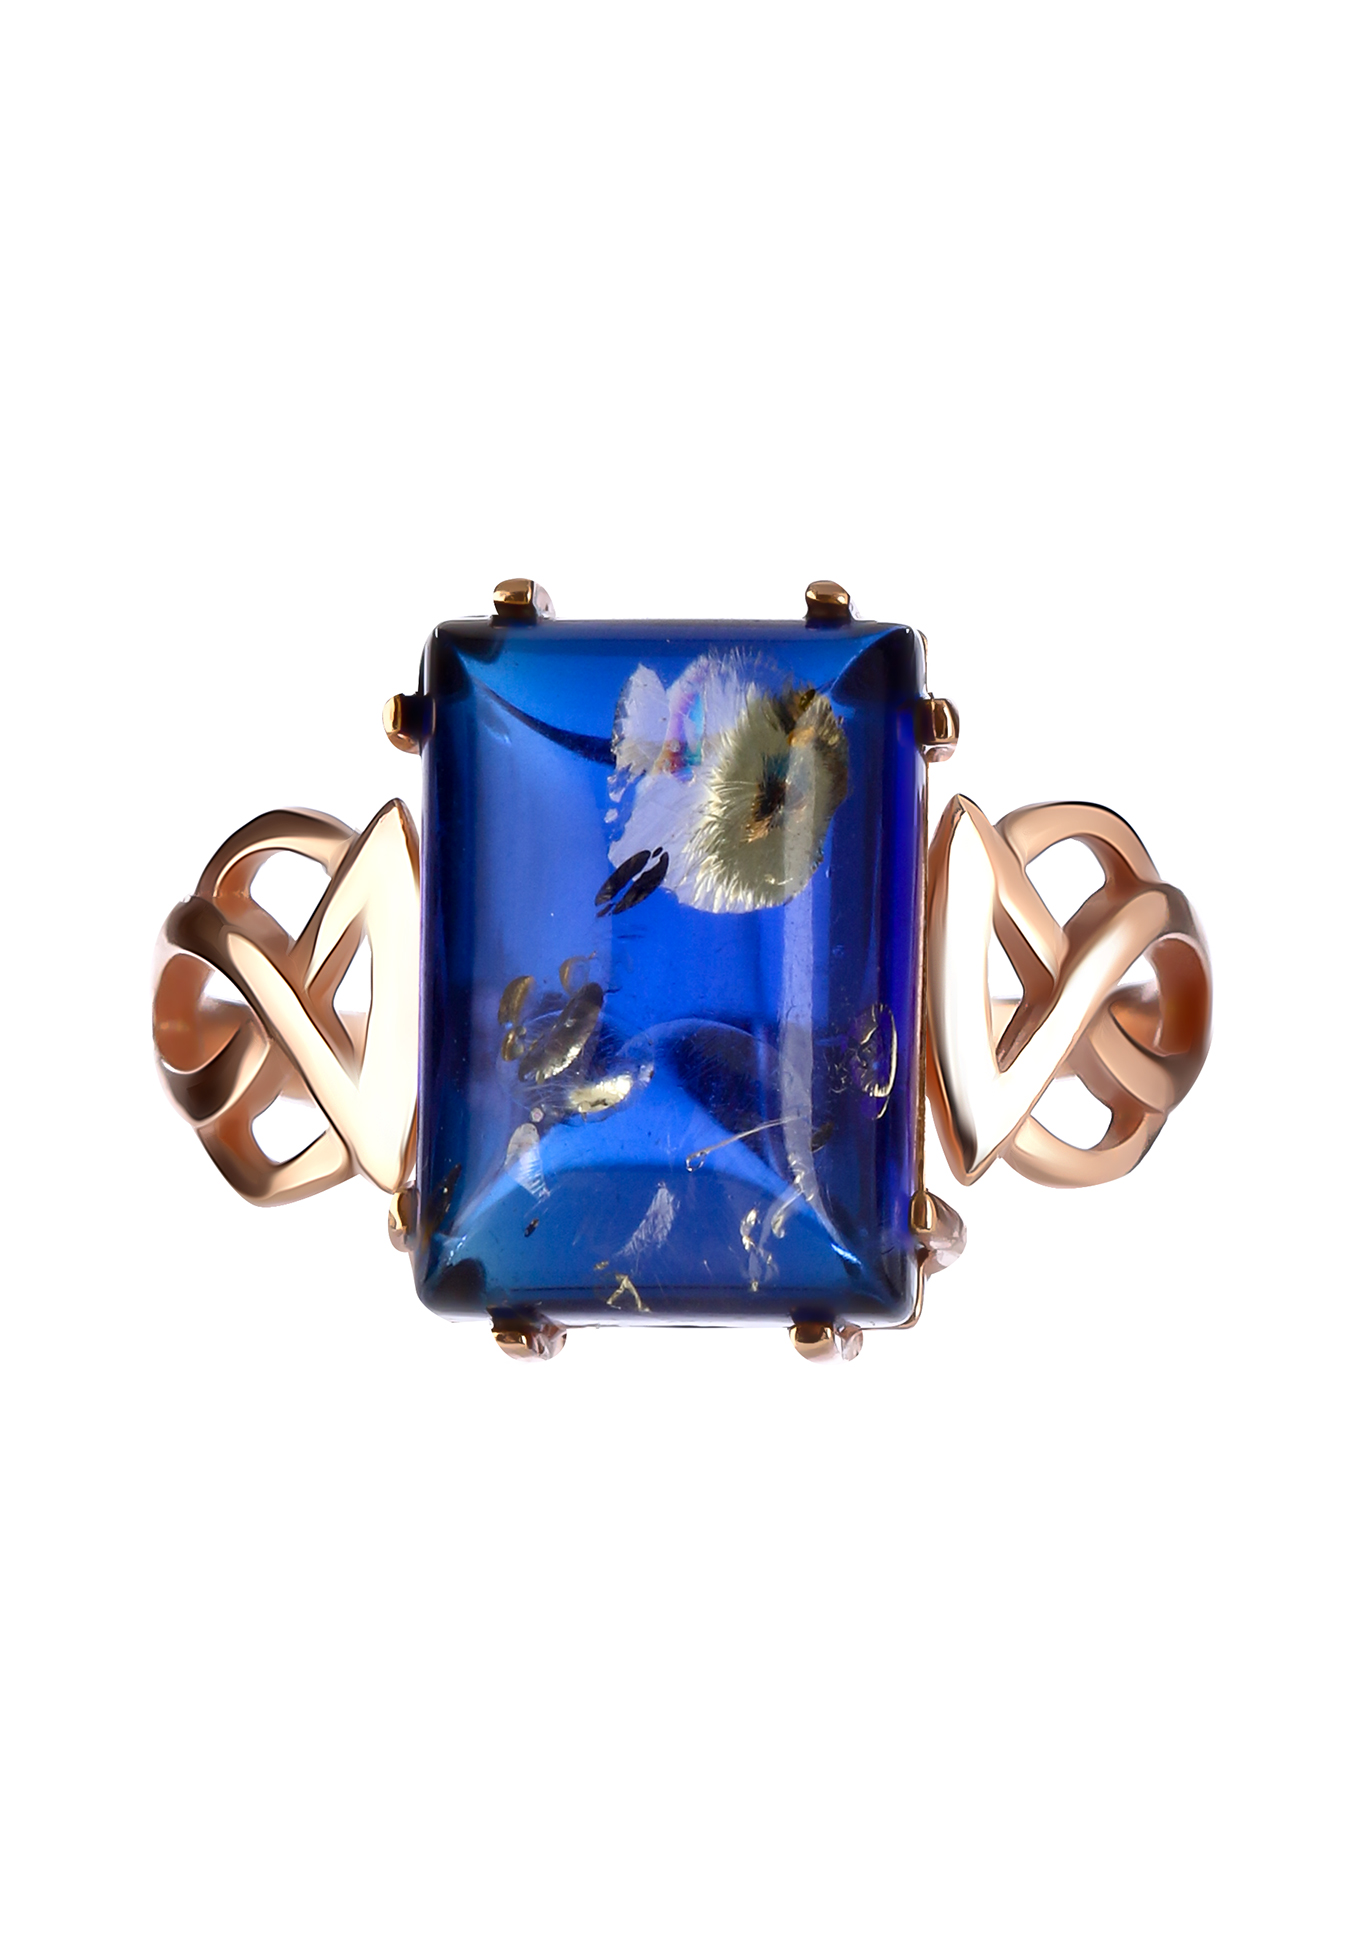 Кольцо серебряное  "Сокровище природы" Янтарная волна, цвет синий, размер 17 перстень - фото 2